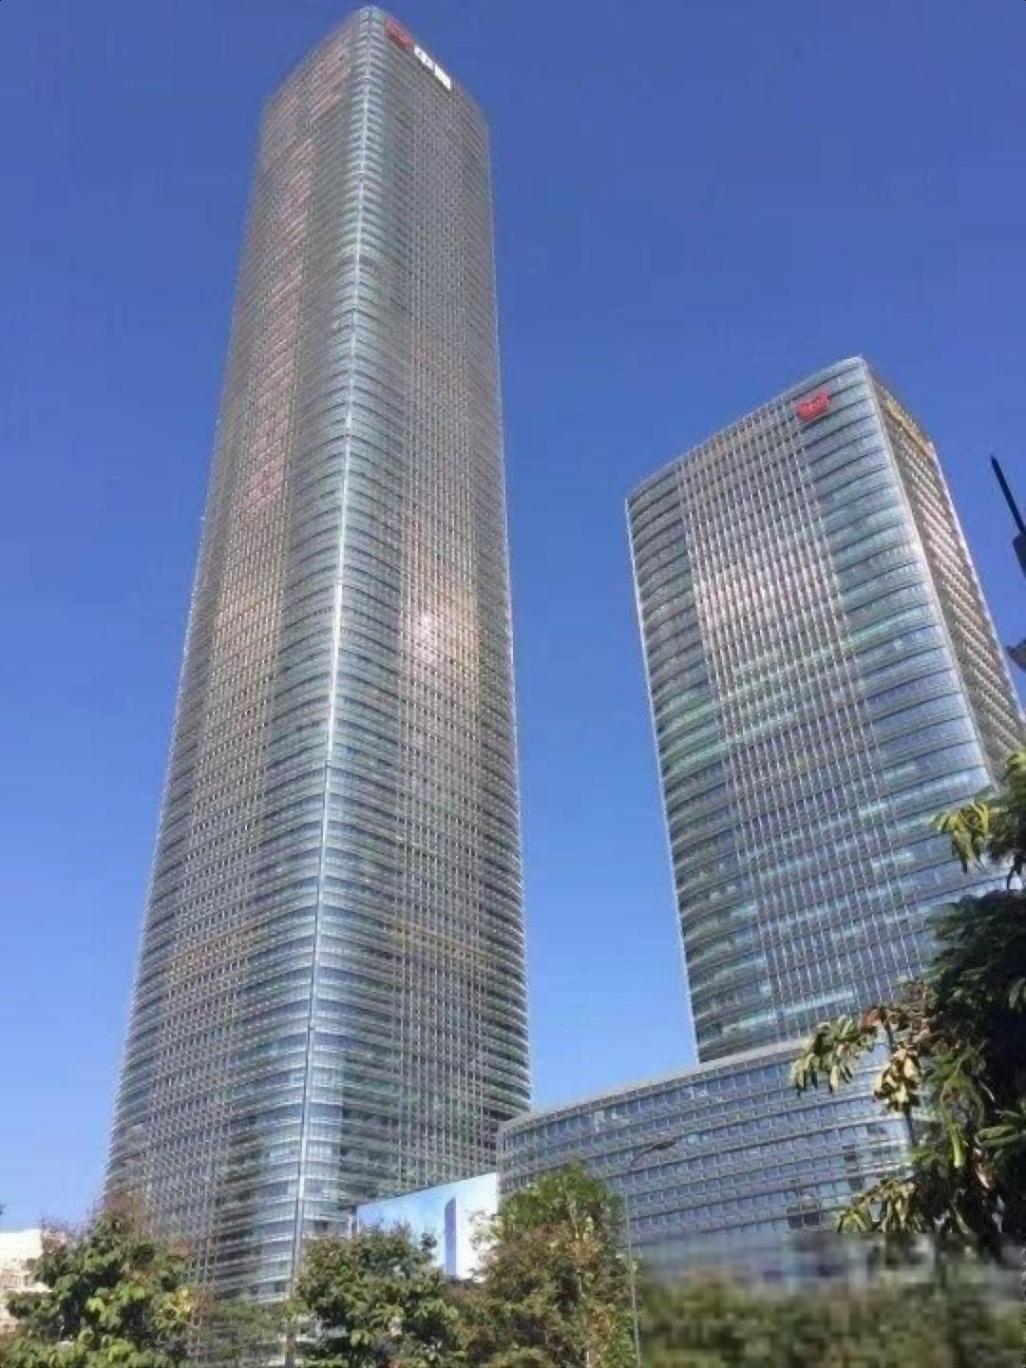 中洲控股大厦豪装1100平办公室电梯口带家私东南向采光佳